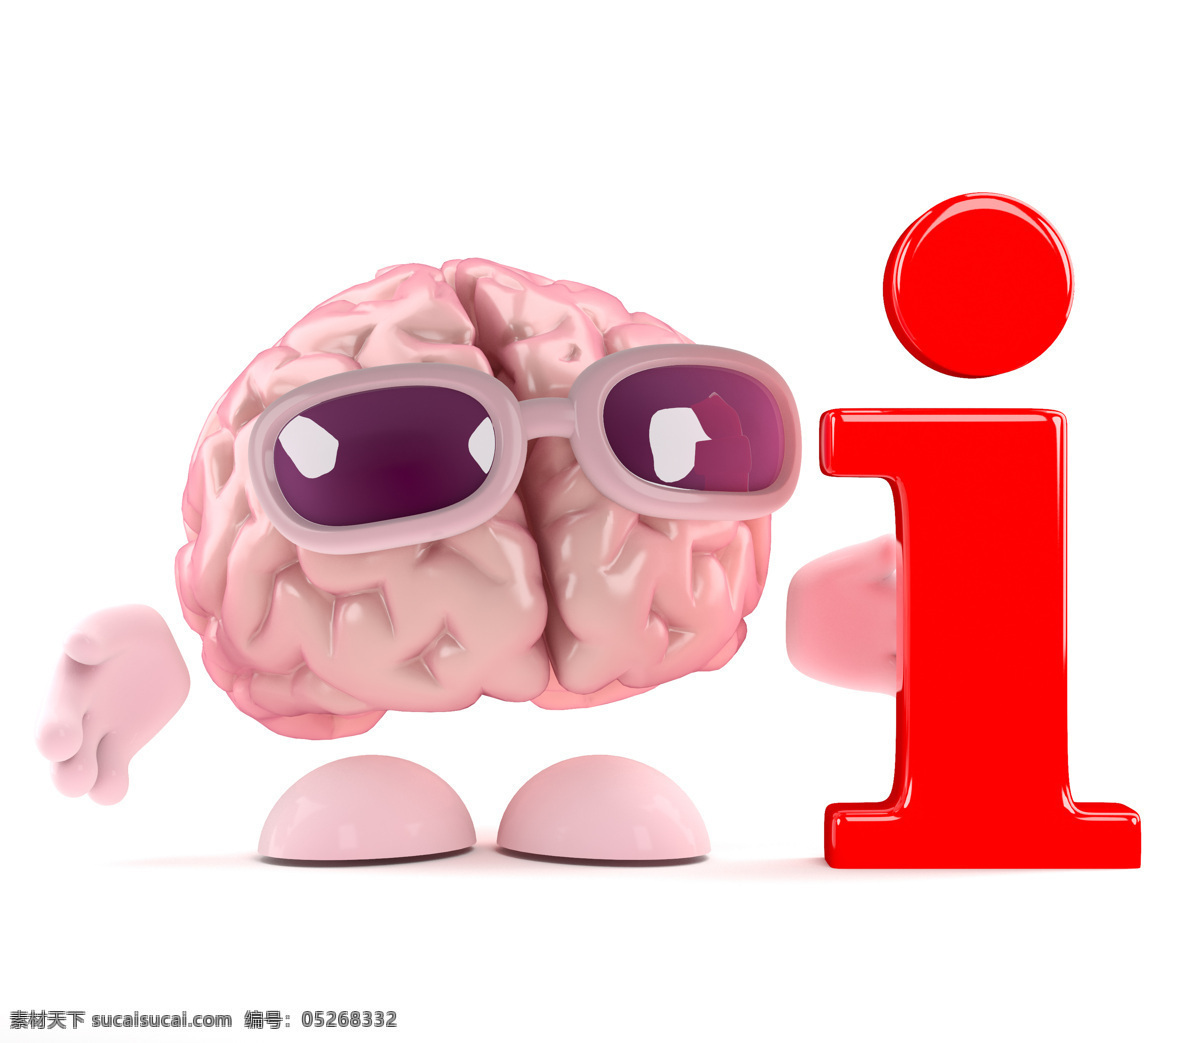 大脑 漫画 英文字母 人类大脑 大脑漫画 大脑设计 卡通大脑 大脑人物 虚拟人物 儿童卡通 卡通动画 脑细胞 脑容量 太阳镜 动漫动画